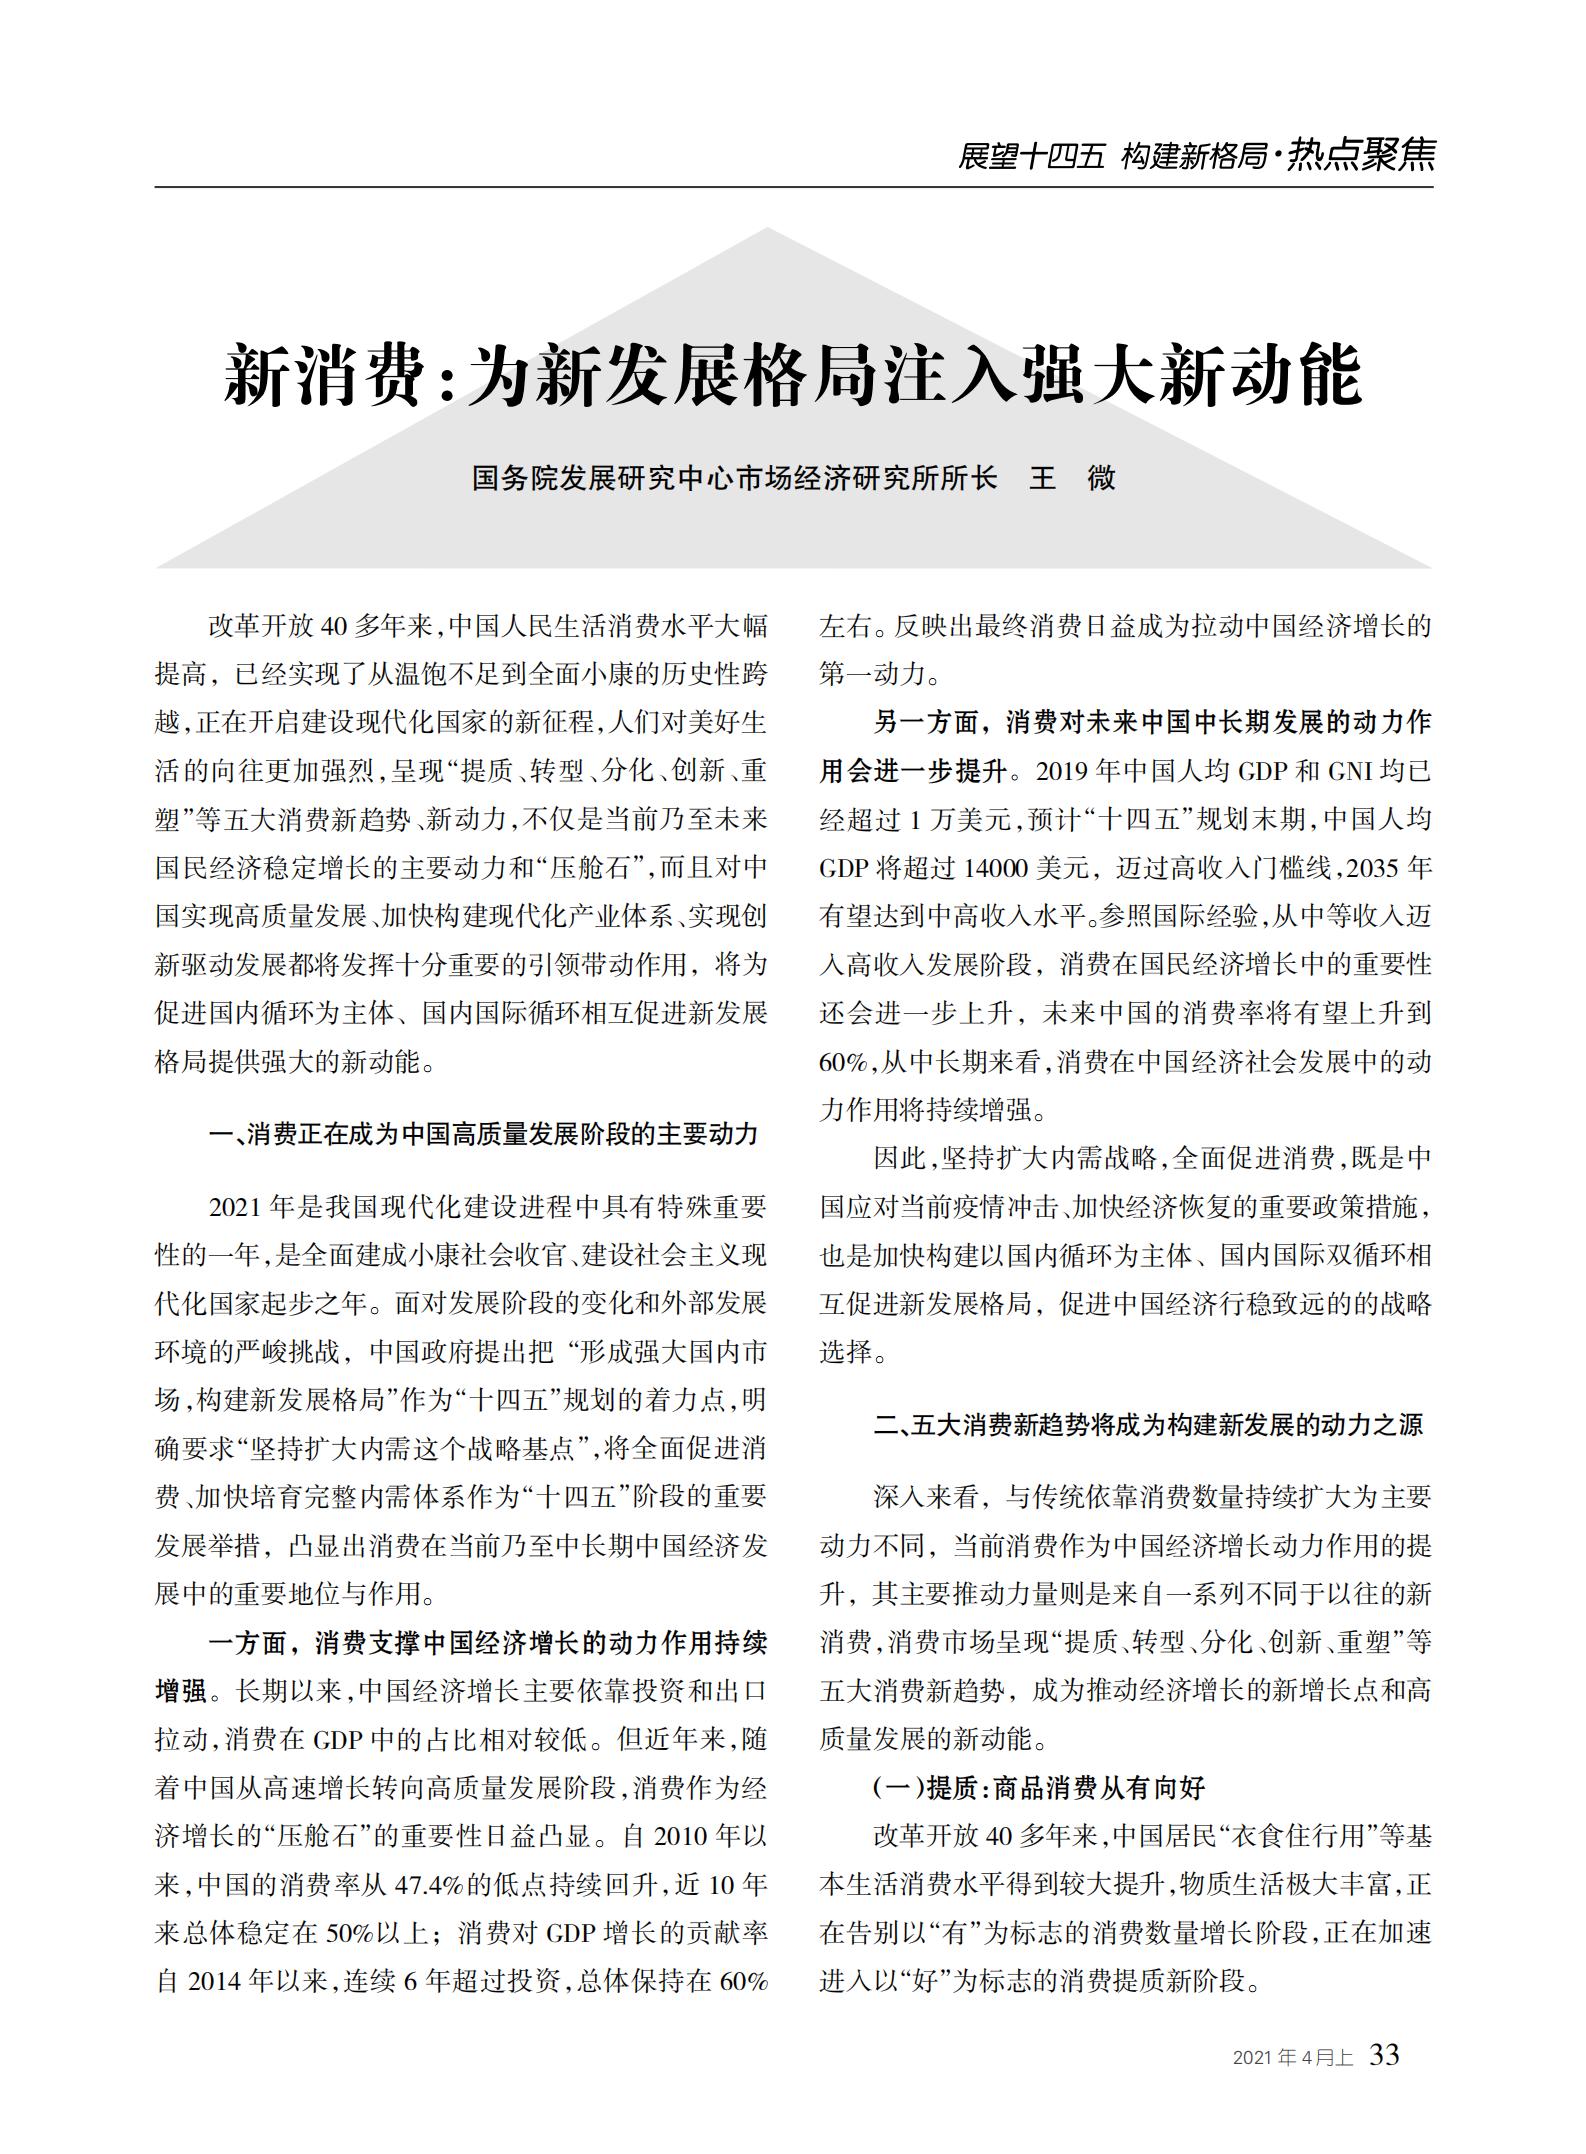 中国经贸导刊2021-4上印刷_32.jpg